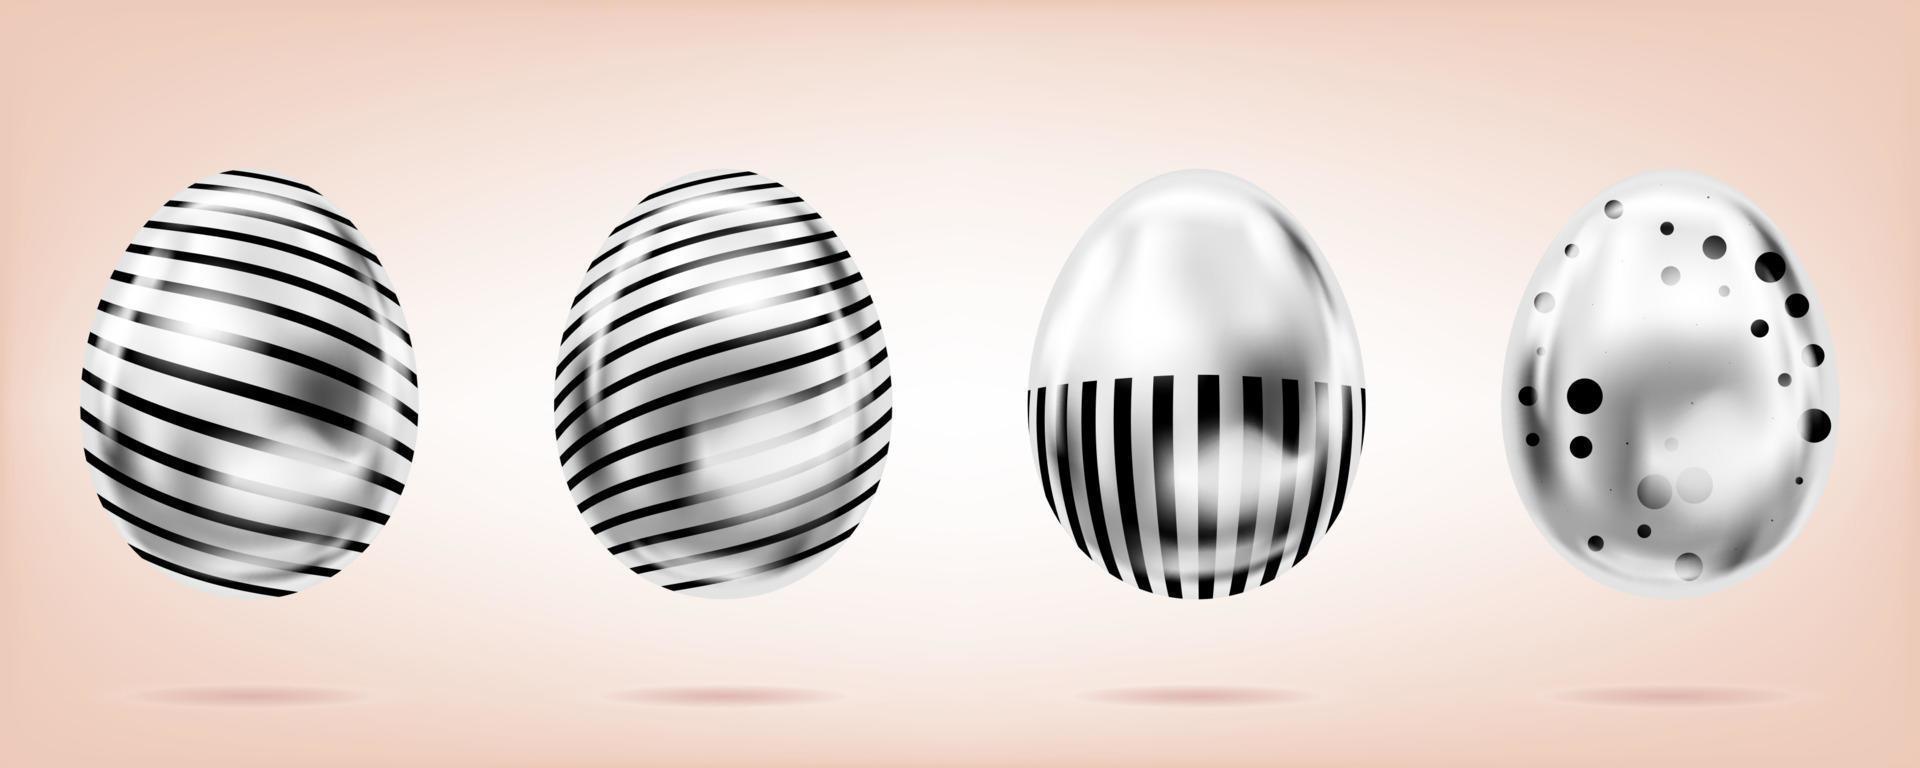 quatro ovos de prata no fundo rosa. objetos isolados para a páscoa. pontos e listras ornamentado vetor